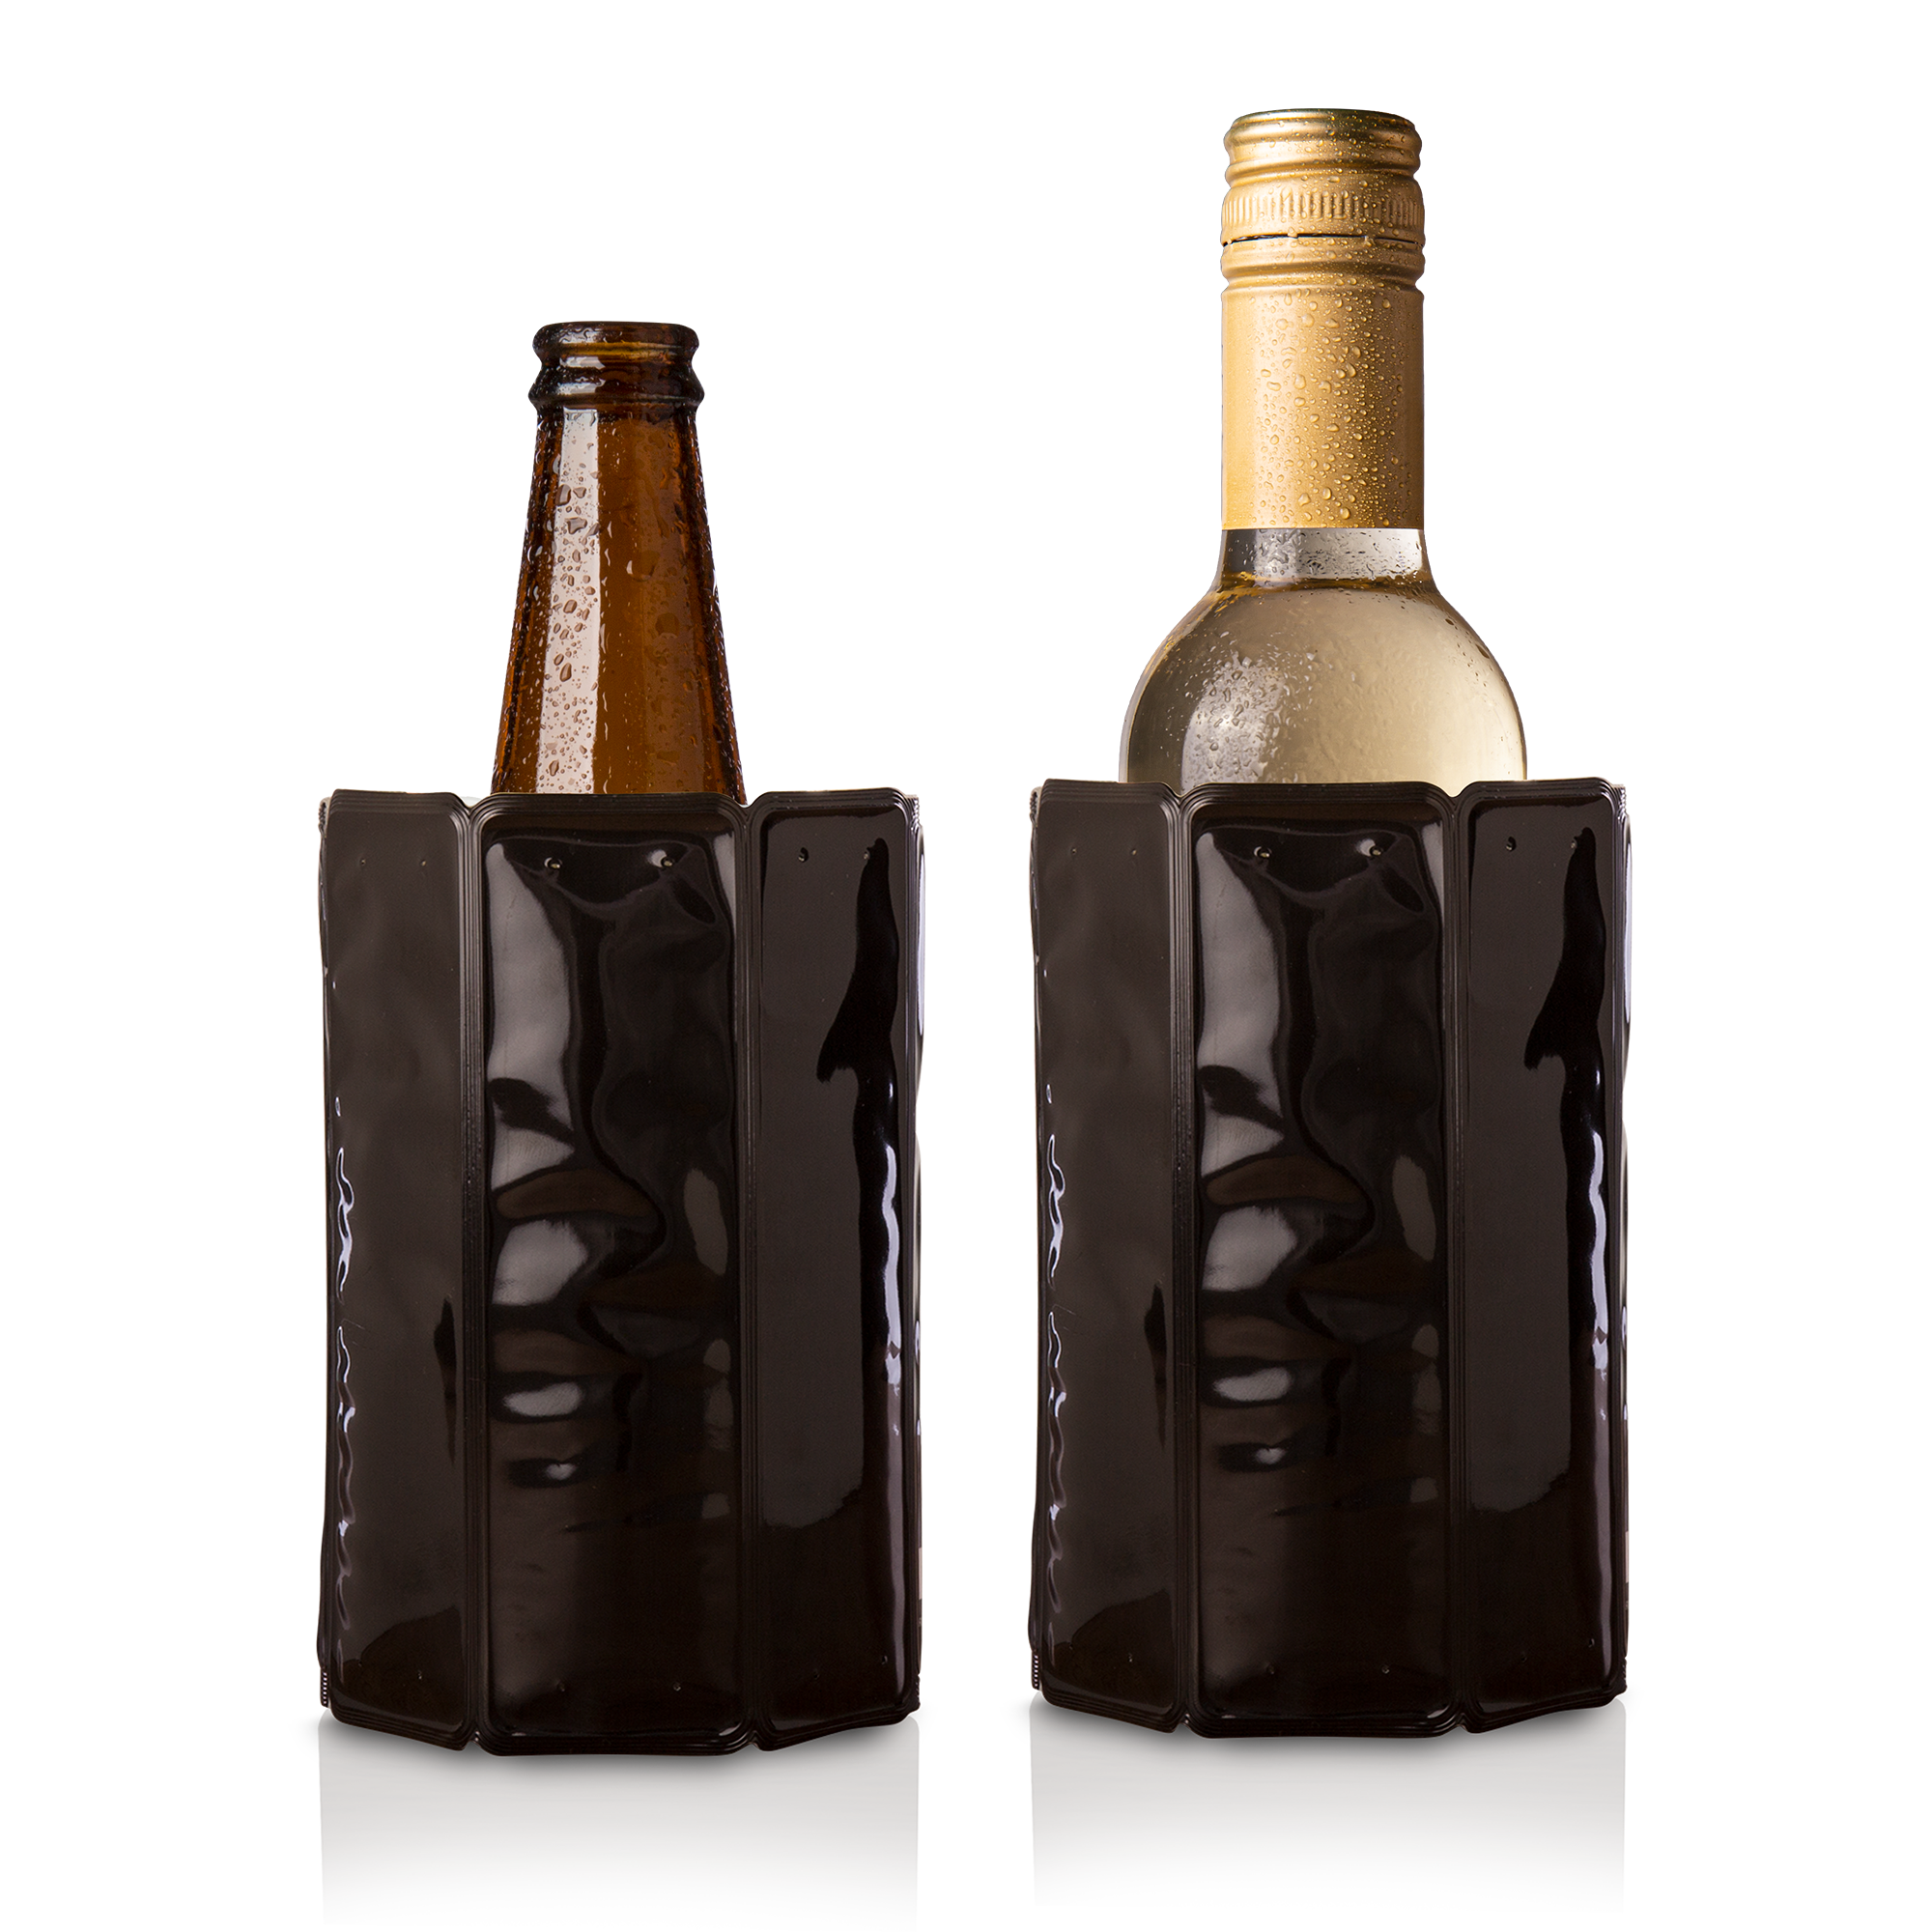 Vacu Vin - Elegant Wine Cooler - Vacu Vin - Wineandbarrels A/S